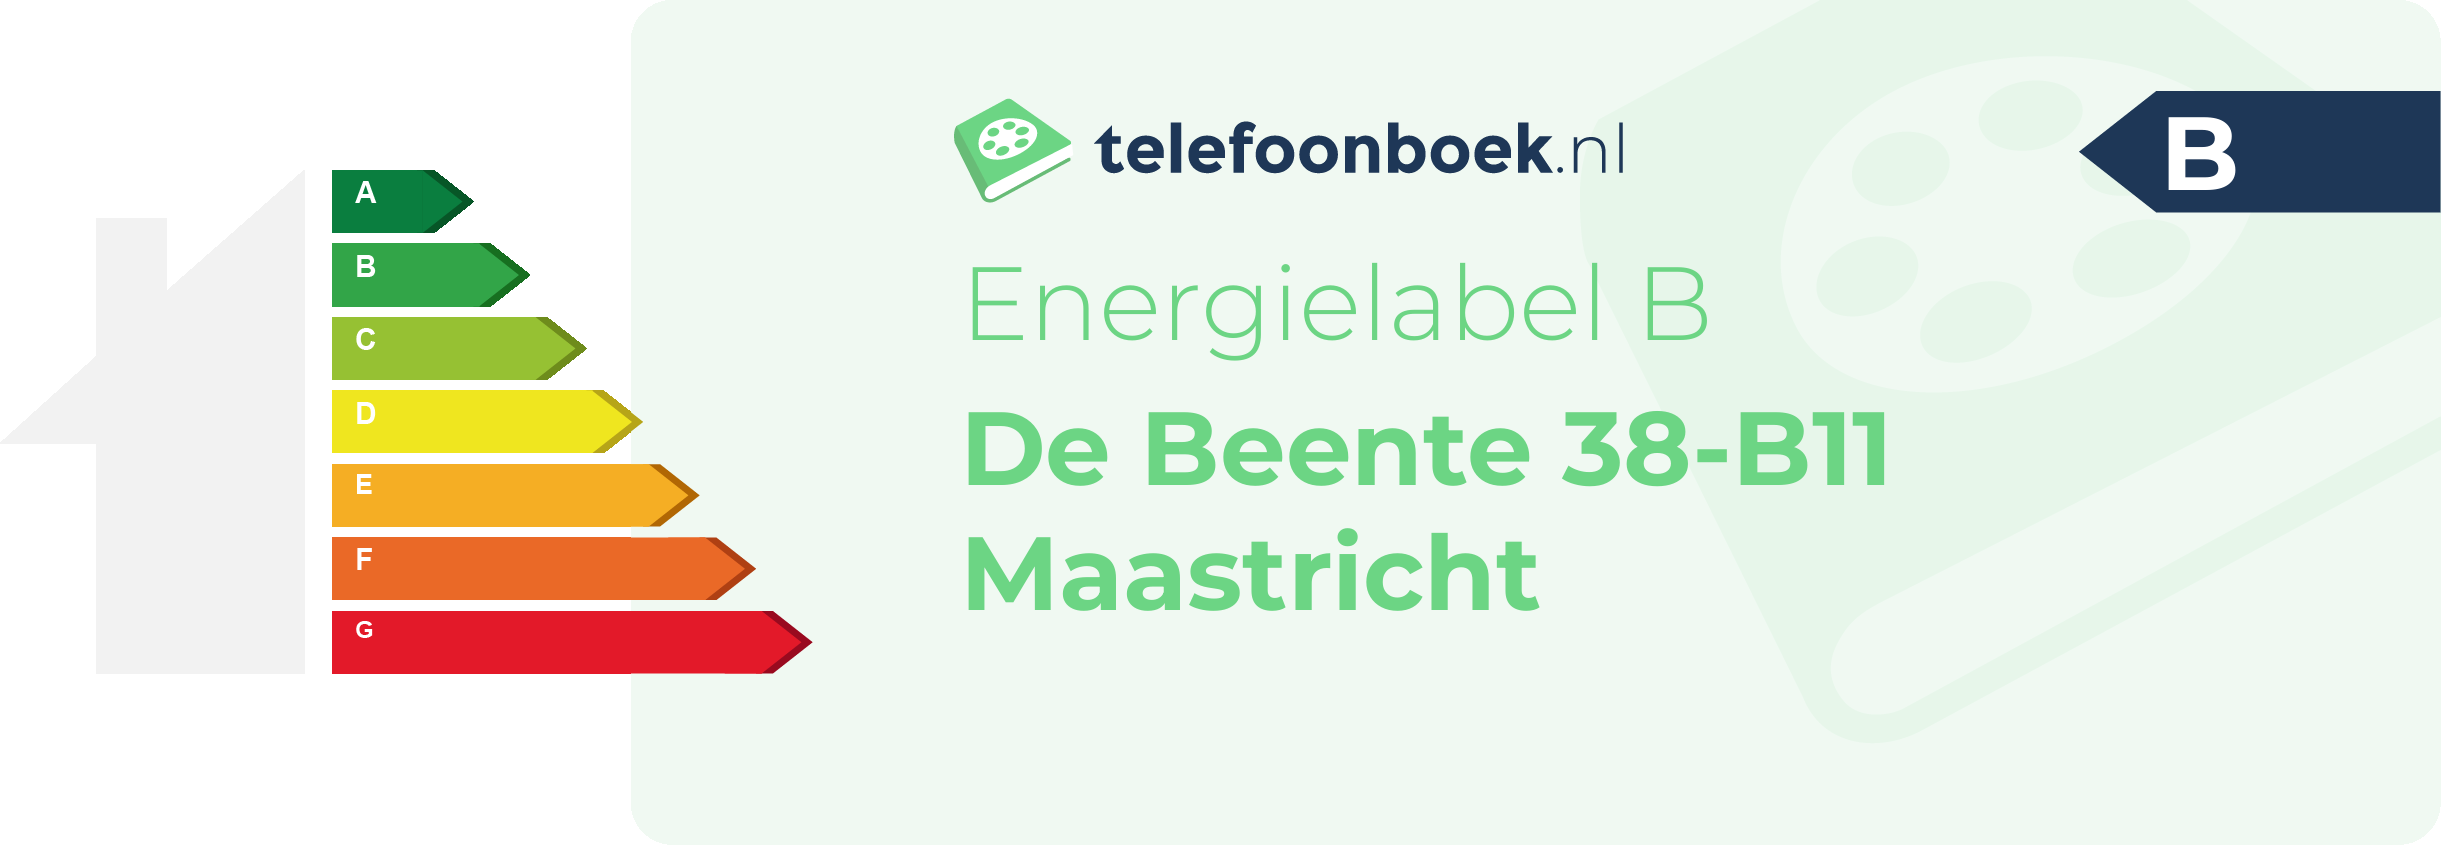 Energielabel De Beente 38-B11 Maastricht